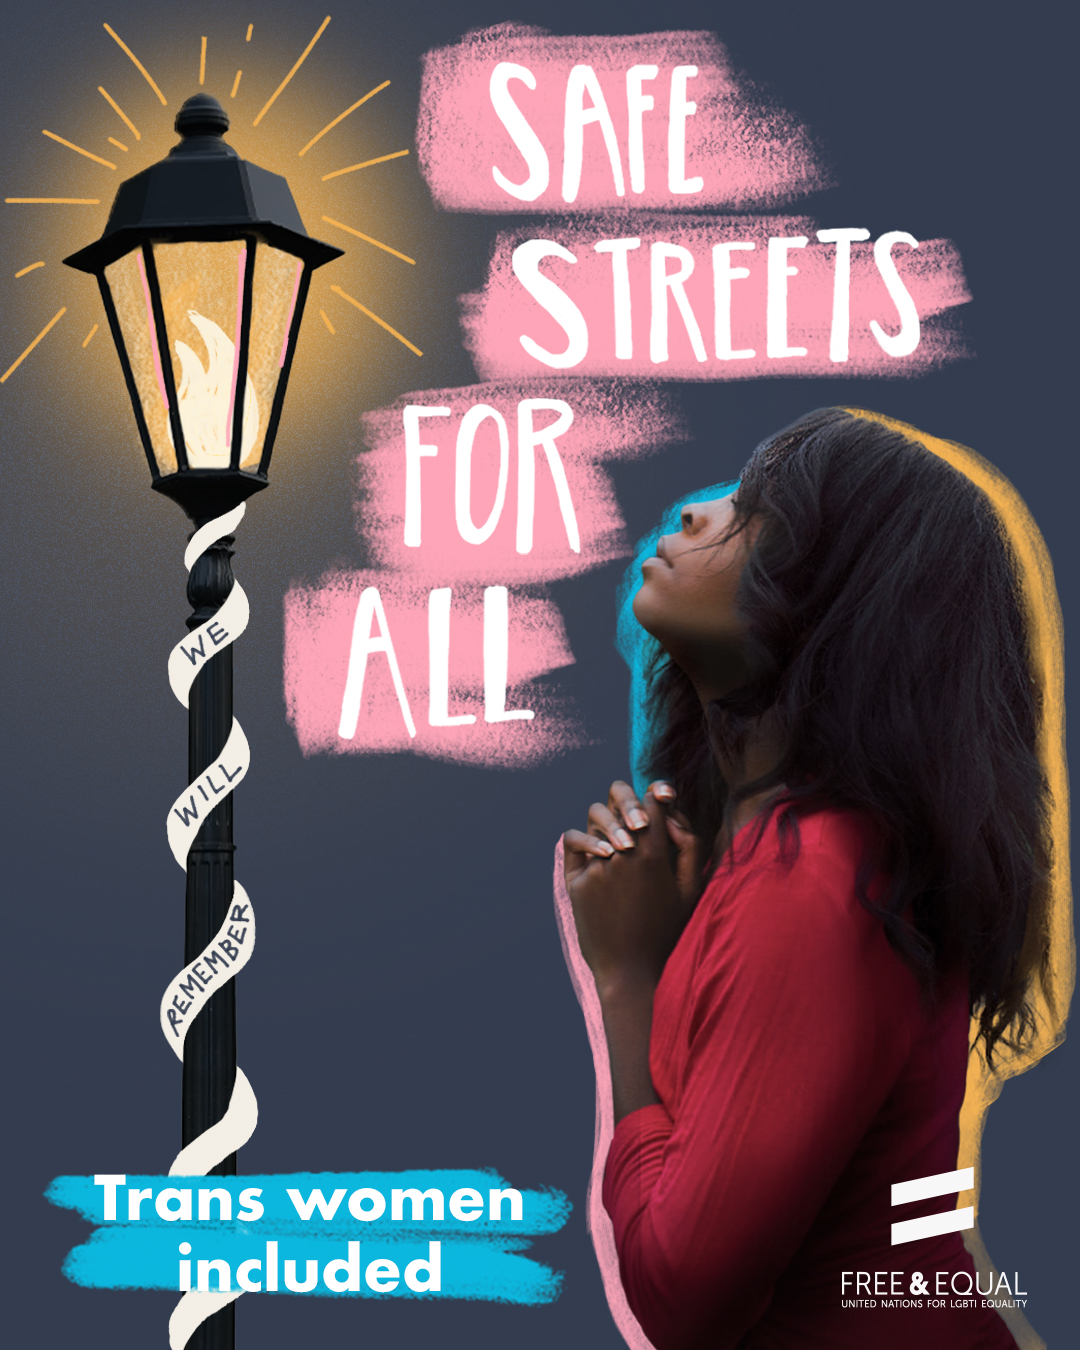 An image of a trans woman standing under a street light.